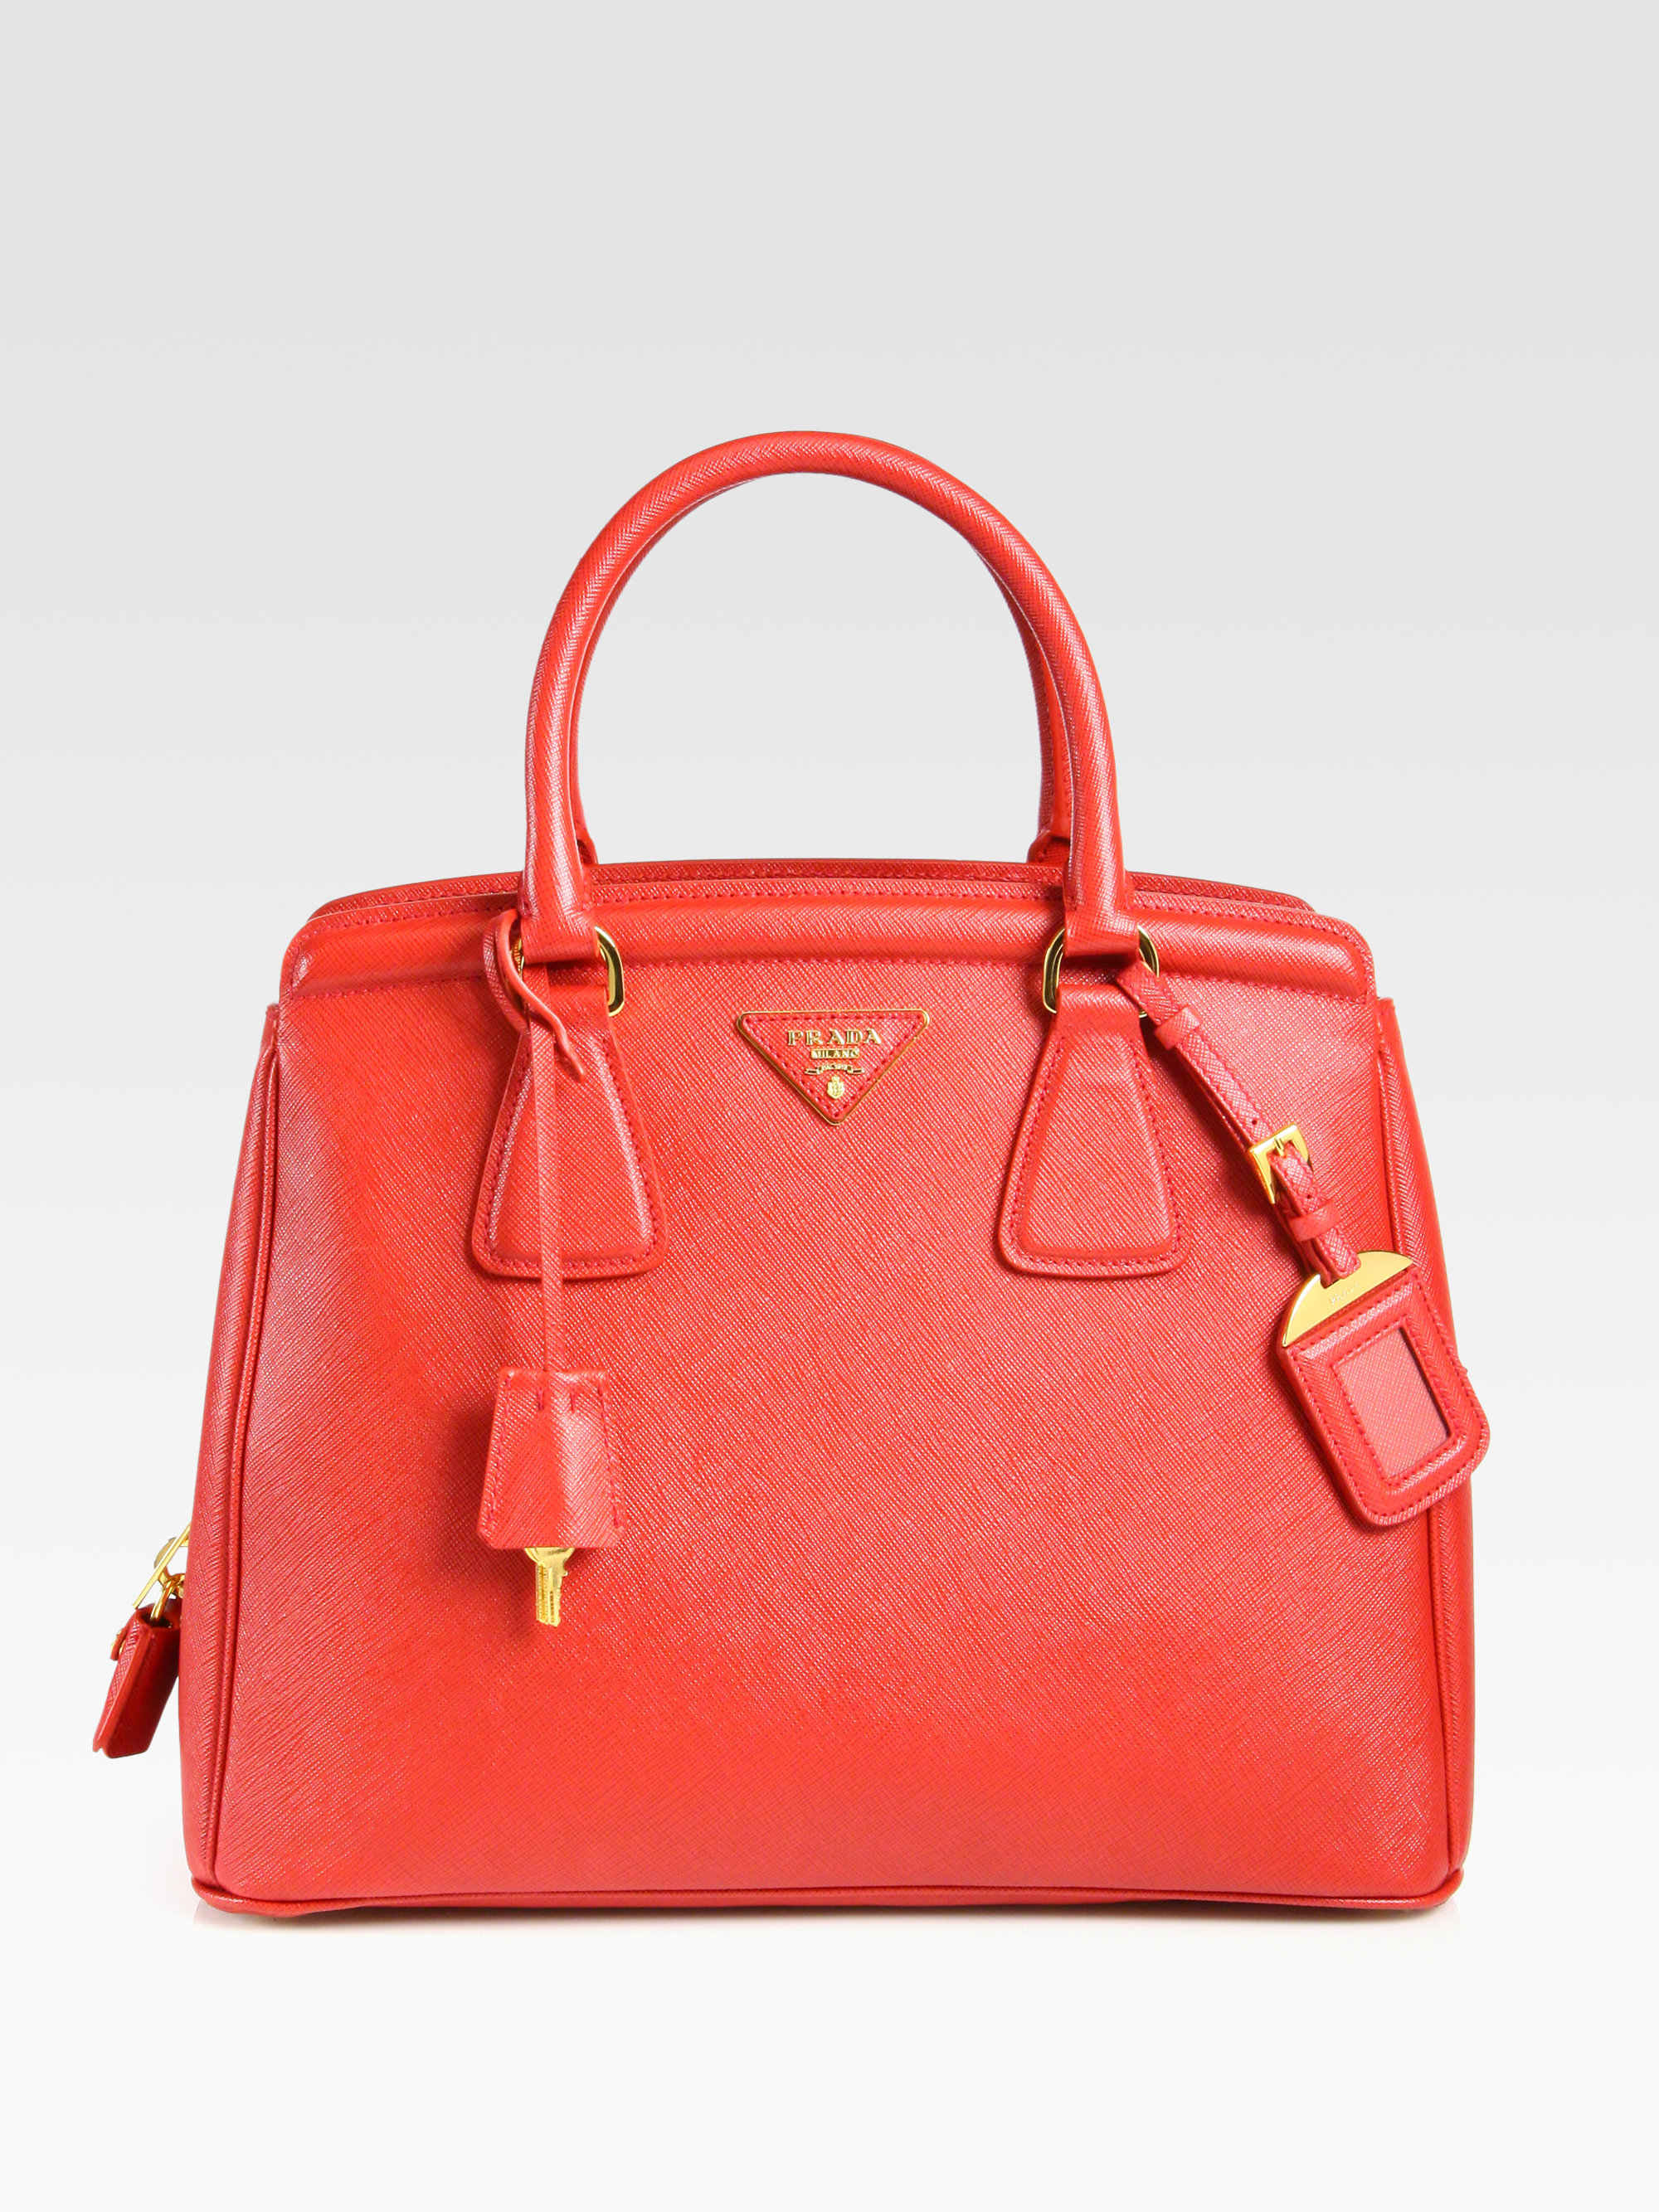 prada large saffiano top-handle bag, prada authentic handbag